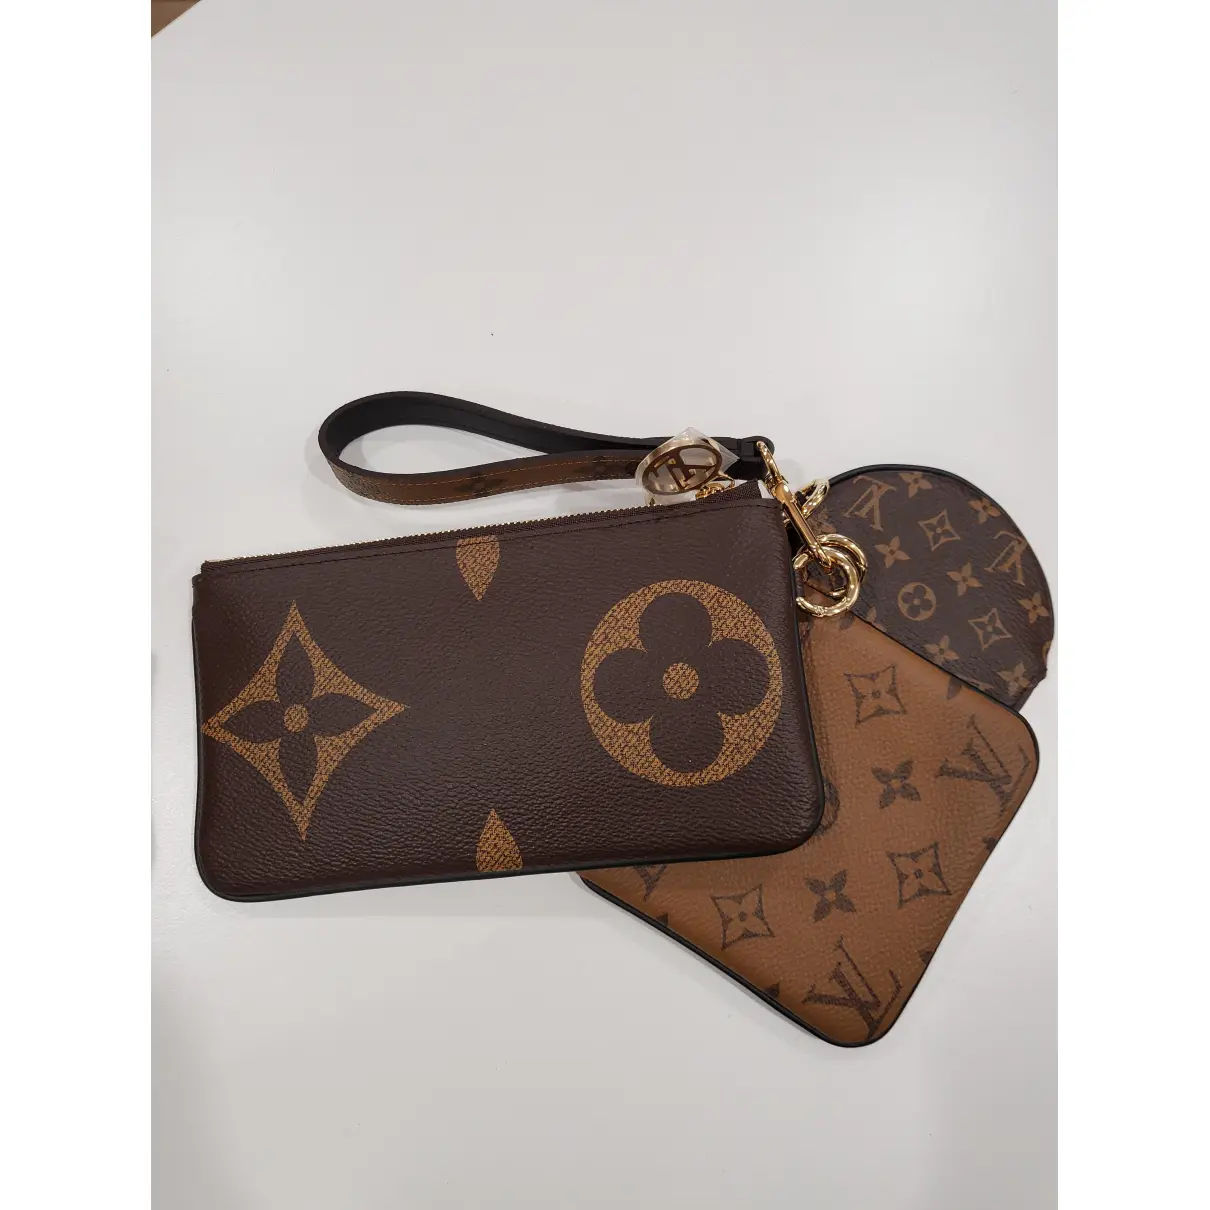 Buy Louis Vuitton Trio pouch cloth clutch bag online